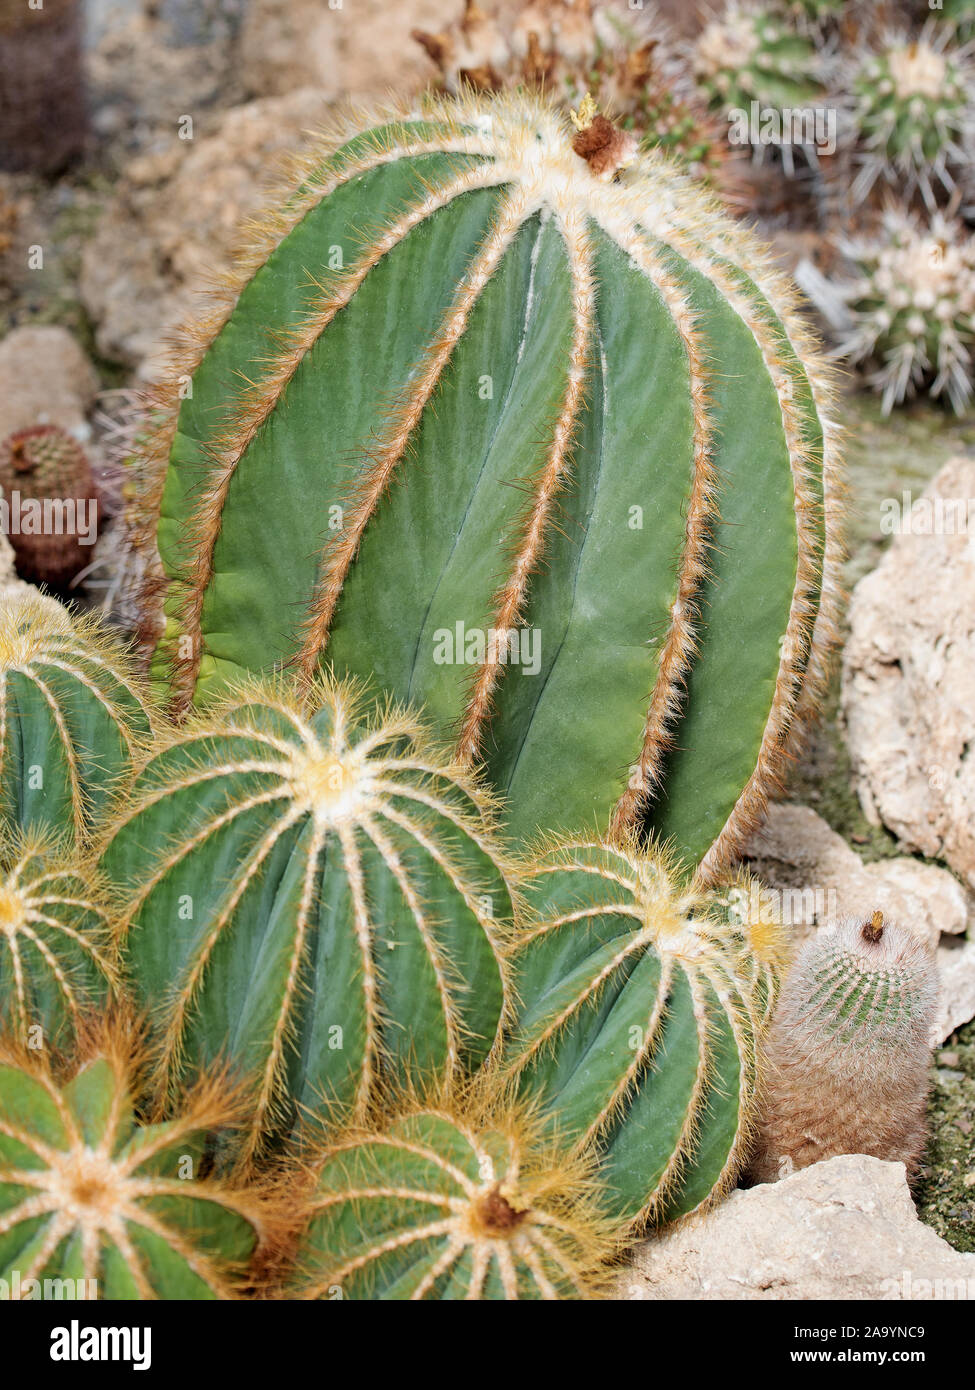 Cacti, eriocactus magnificus, in a closeup Stock Photo